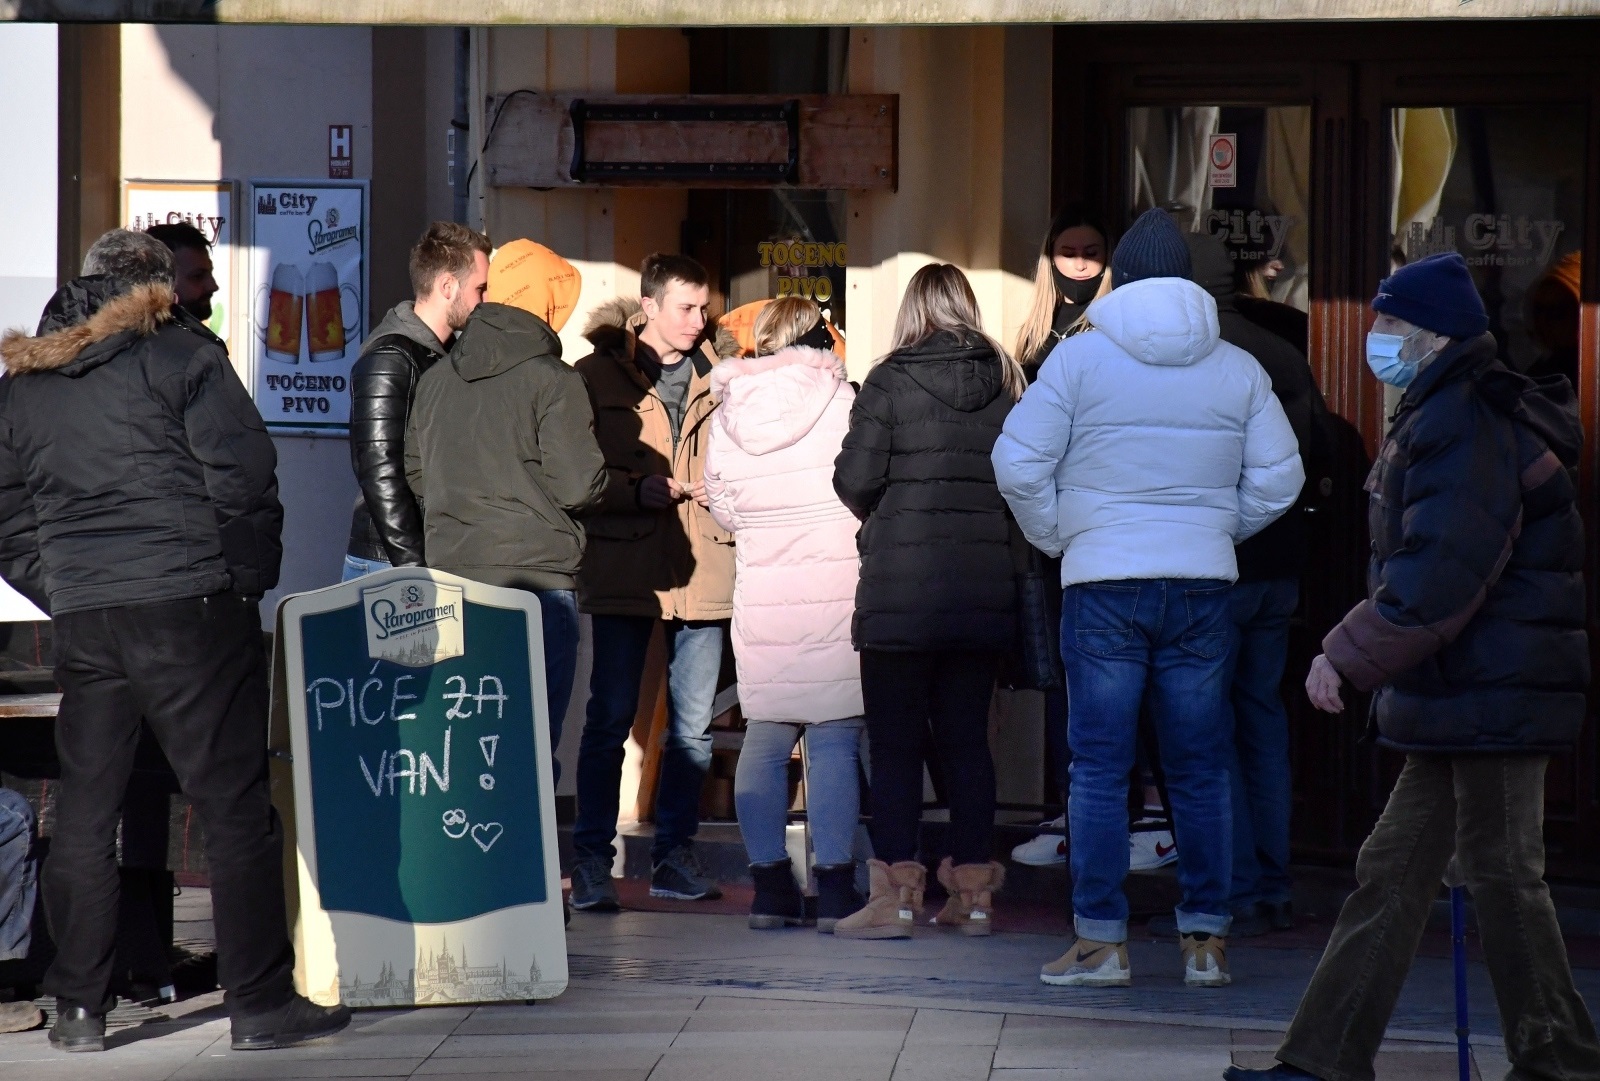 15.02.2021., Slavonski Brod - Brodjani popodnevni predah iskoristili za boravak na suncu uz "kavu za van".
Photo: Ivica Galovic/PIXSELL